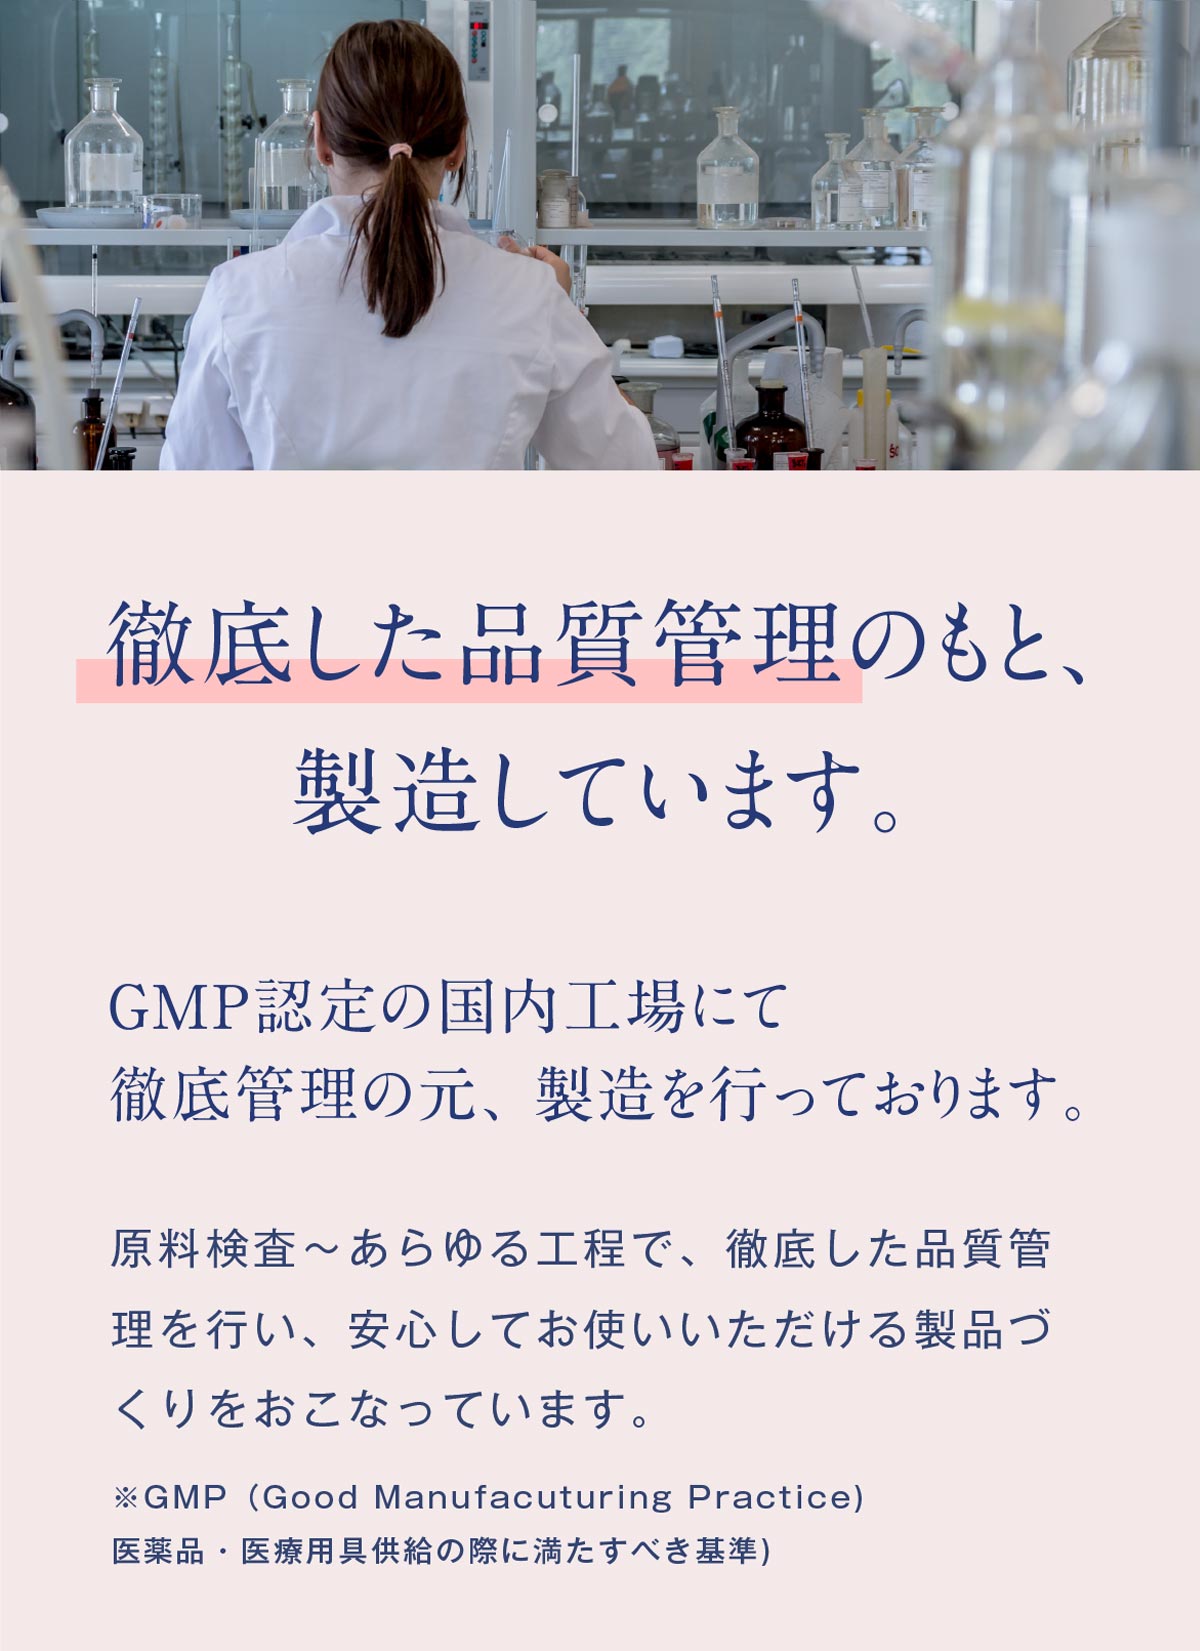 MADE IN JAPANにこだわり、GMP認定の国内工場にて徹底監理の元、製造を行っております。